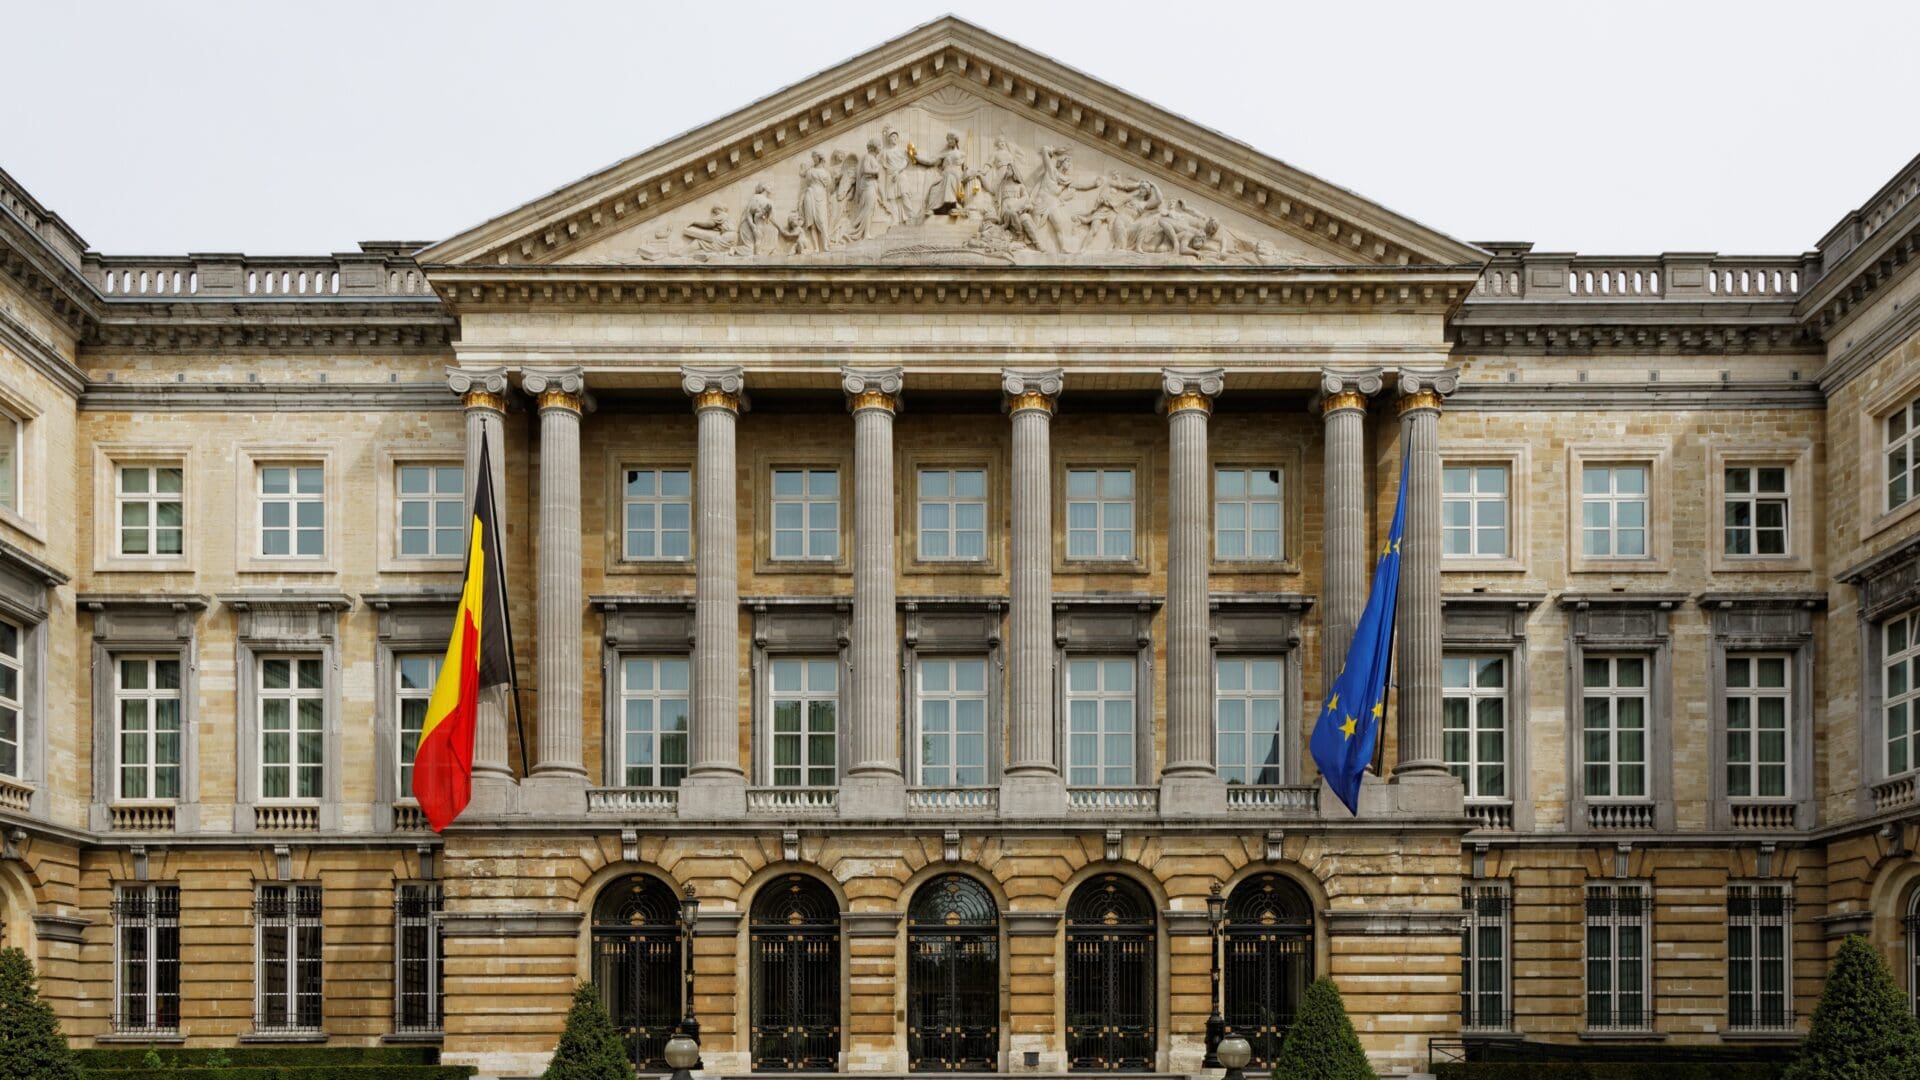 The Palais de la Nation in Brussels, Belgium.